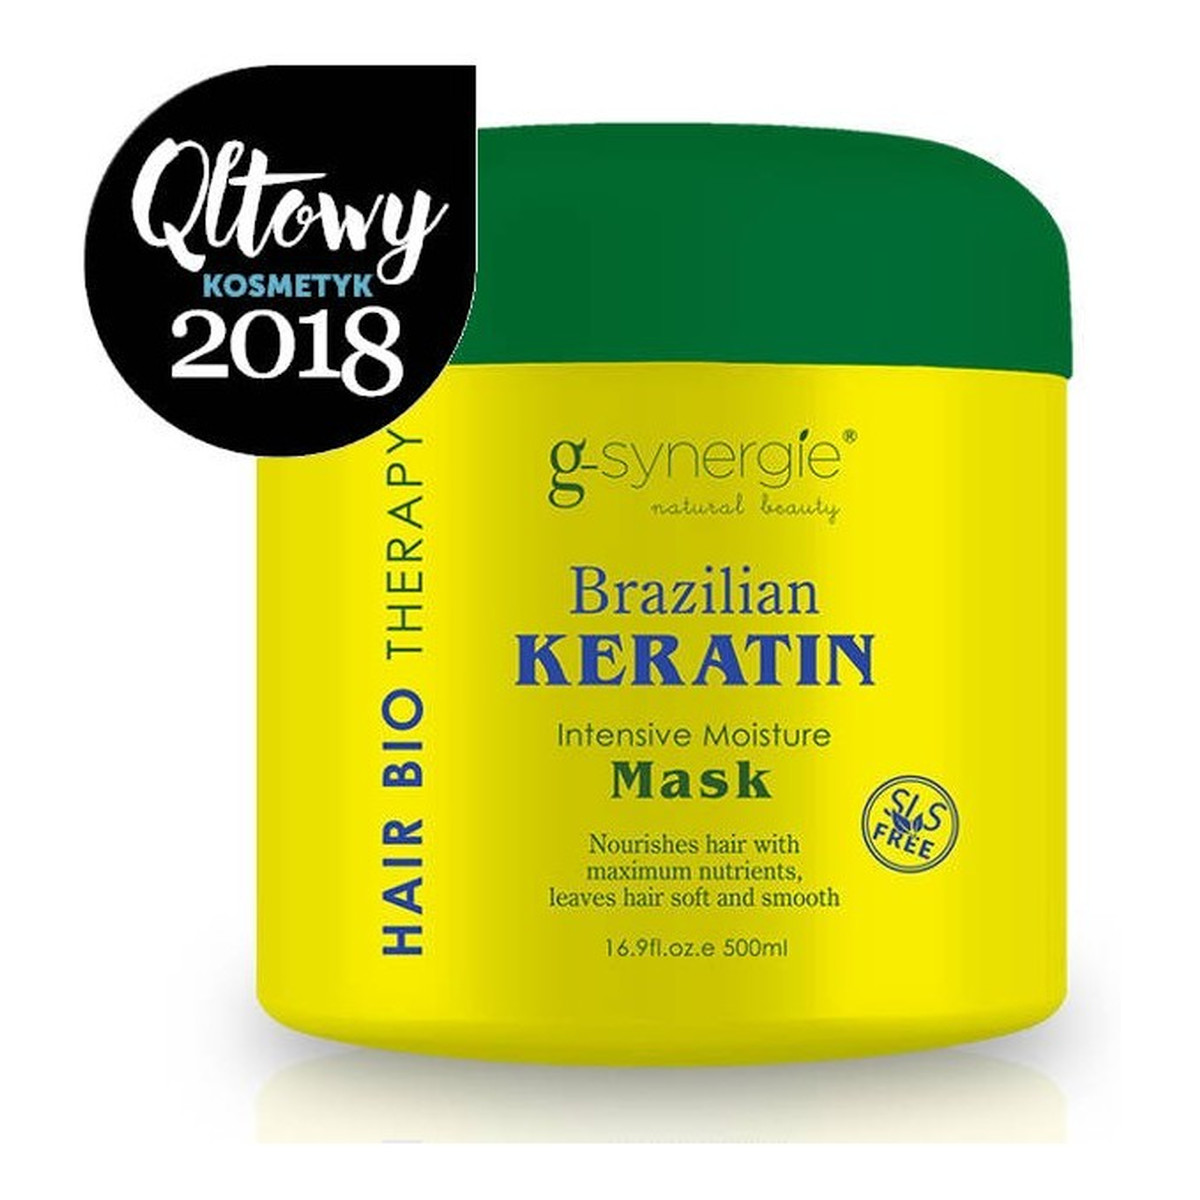 G-Synergie Brazilian Keratin maska intensywnie nawilżająca włosy 500ml